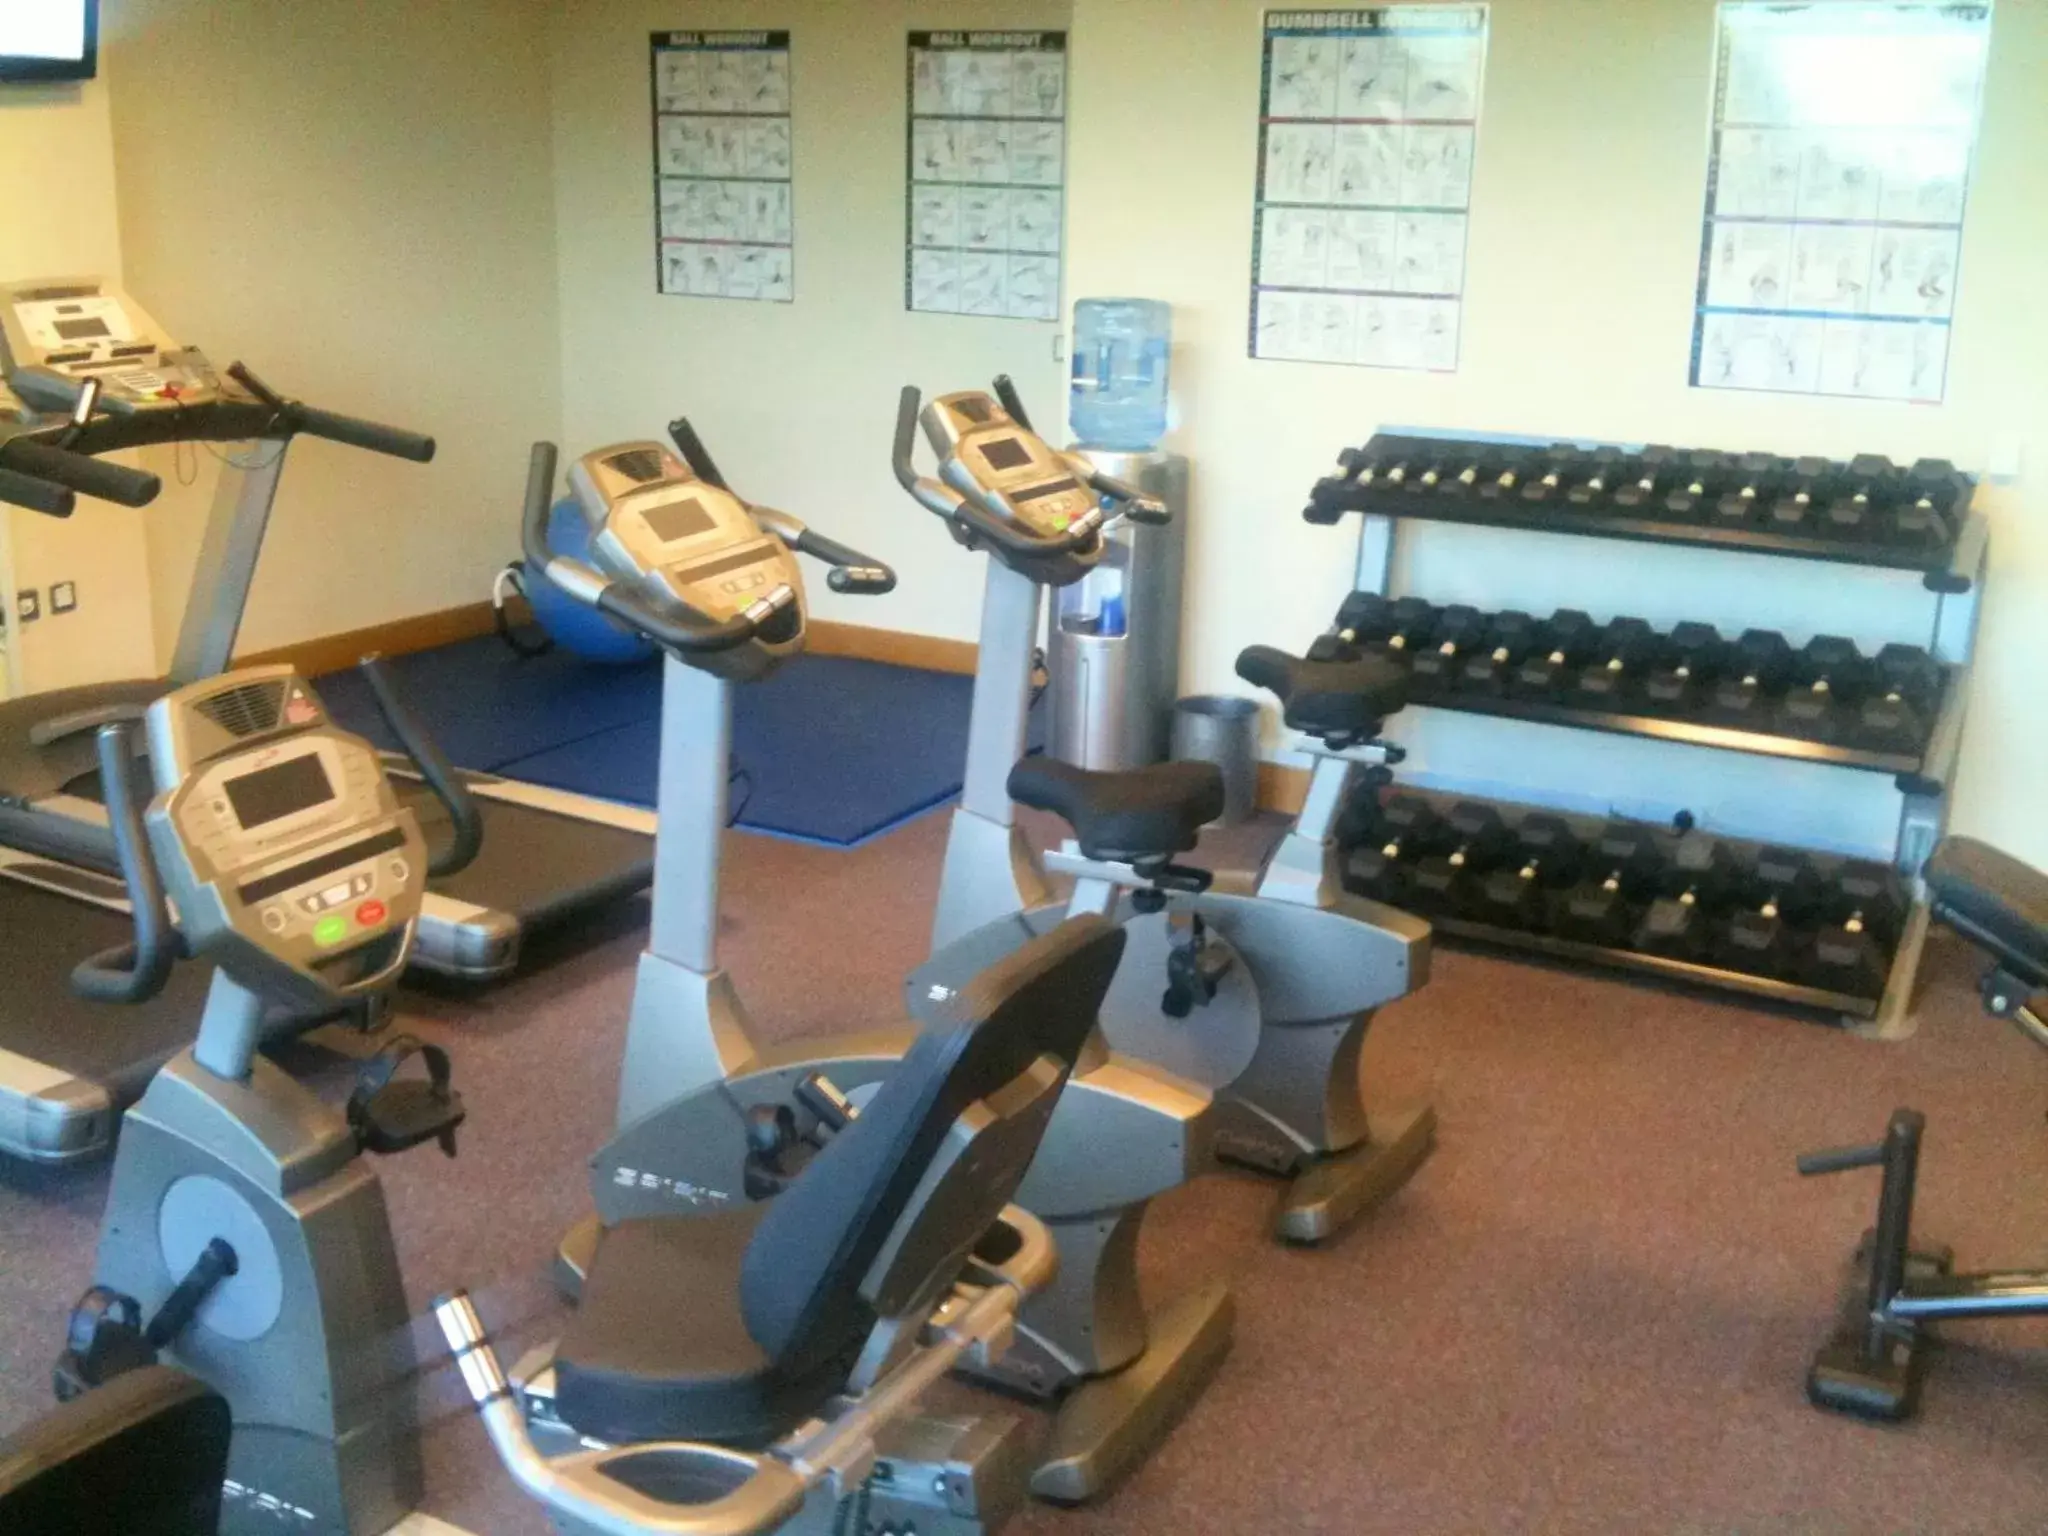 Fitness centre/facilities, Fitness Center/Facilities in Leonardo Hotel Derby - Formerly Jurys Inn